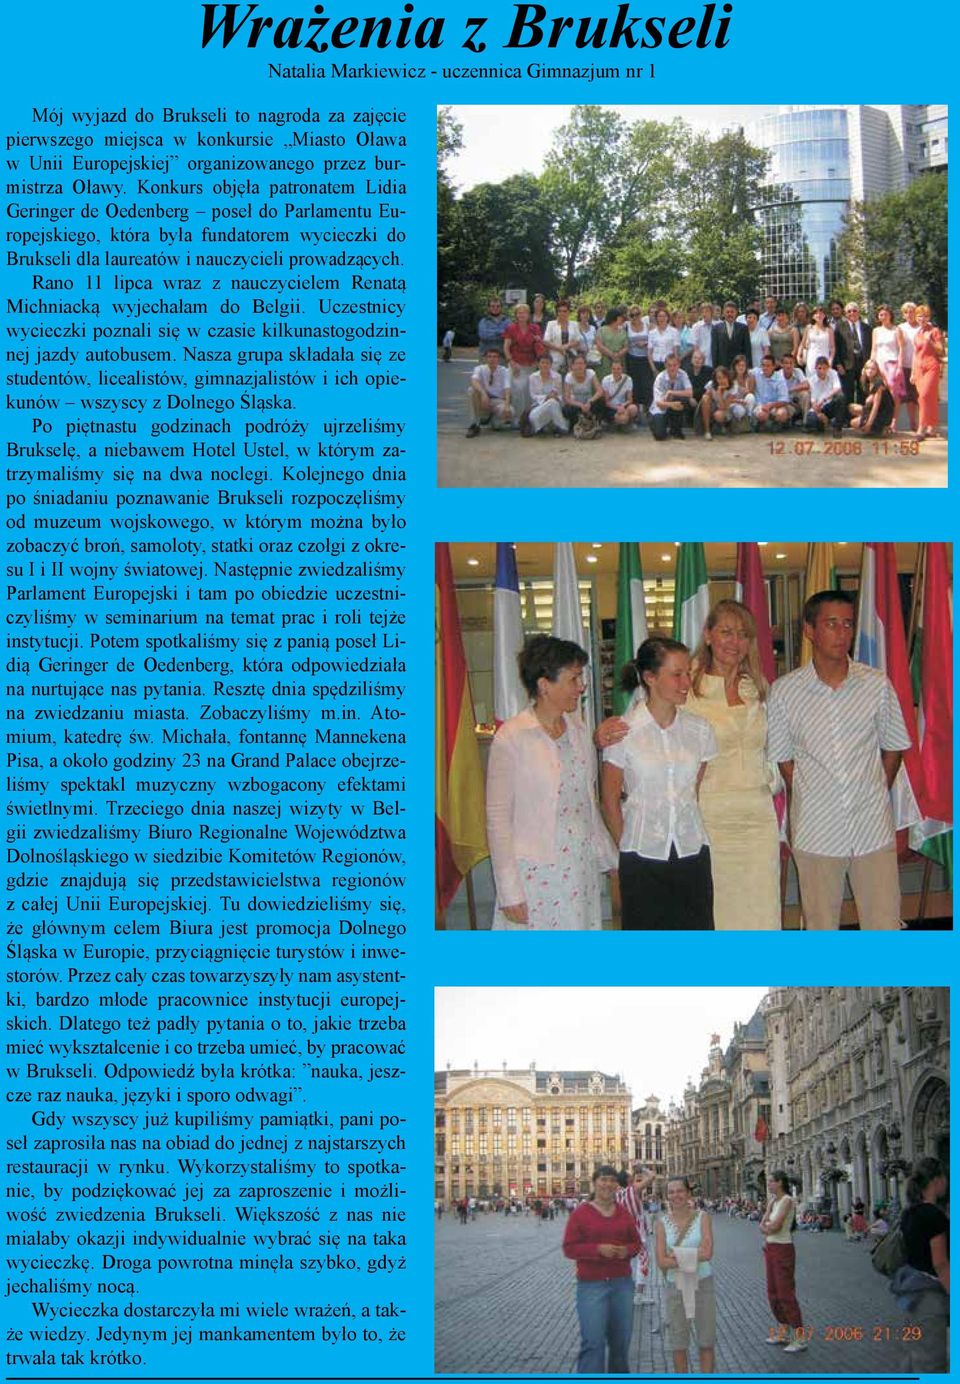 Rano 11 lipca wraz z nauczycielem Renatą Michniacką wyjechałam do Belgii. Uczestnicy wycieczki poznali się w czasie kilkunastogodzinnej jazdy autobusem.